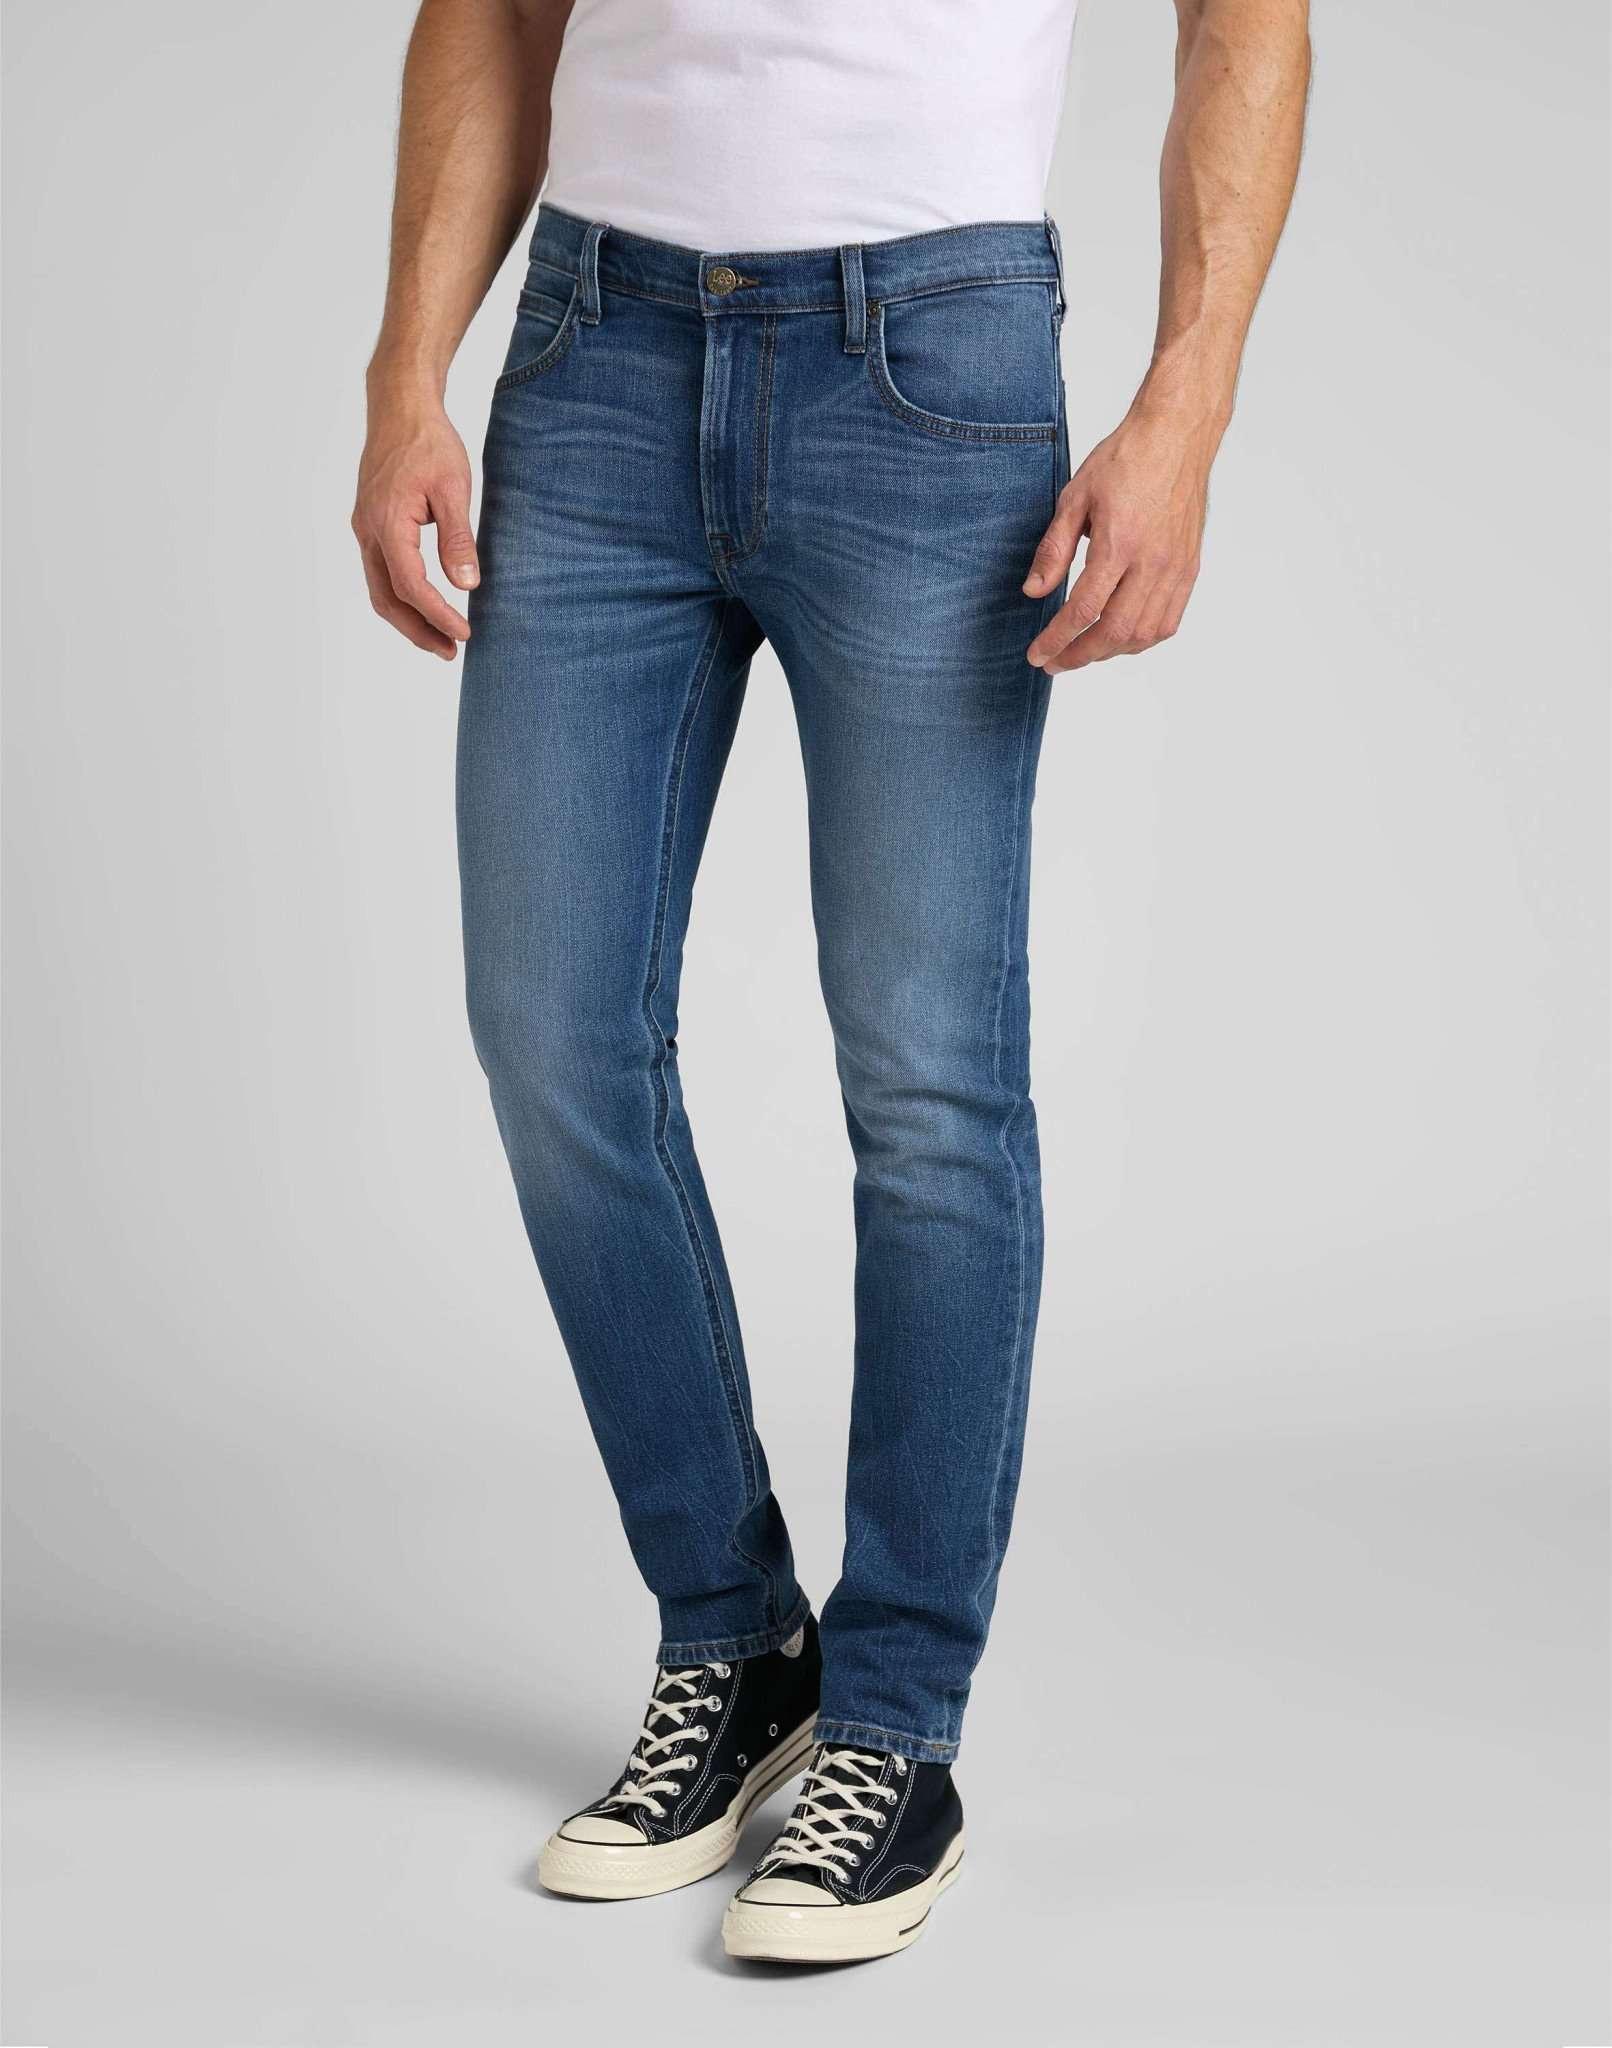 Jeans Slim Fit Luke Herren Blau Denim L34/W33 von Lee